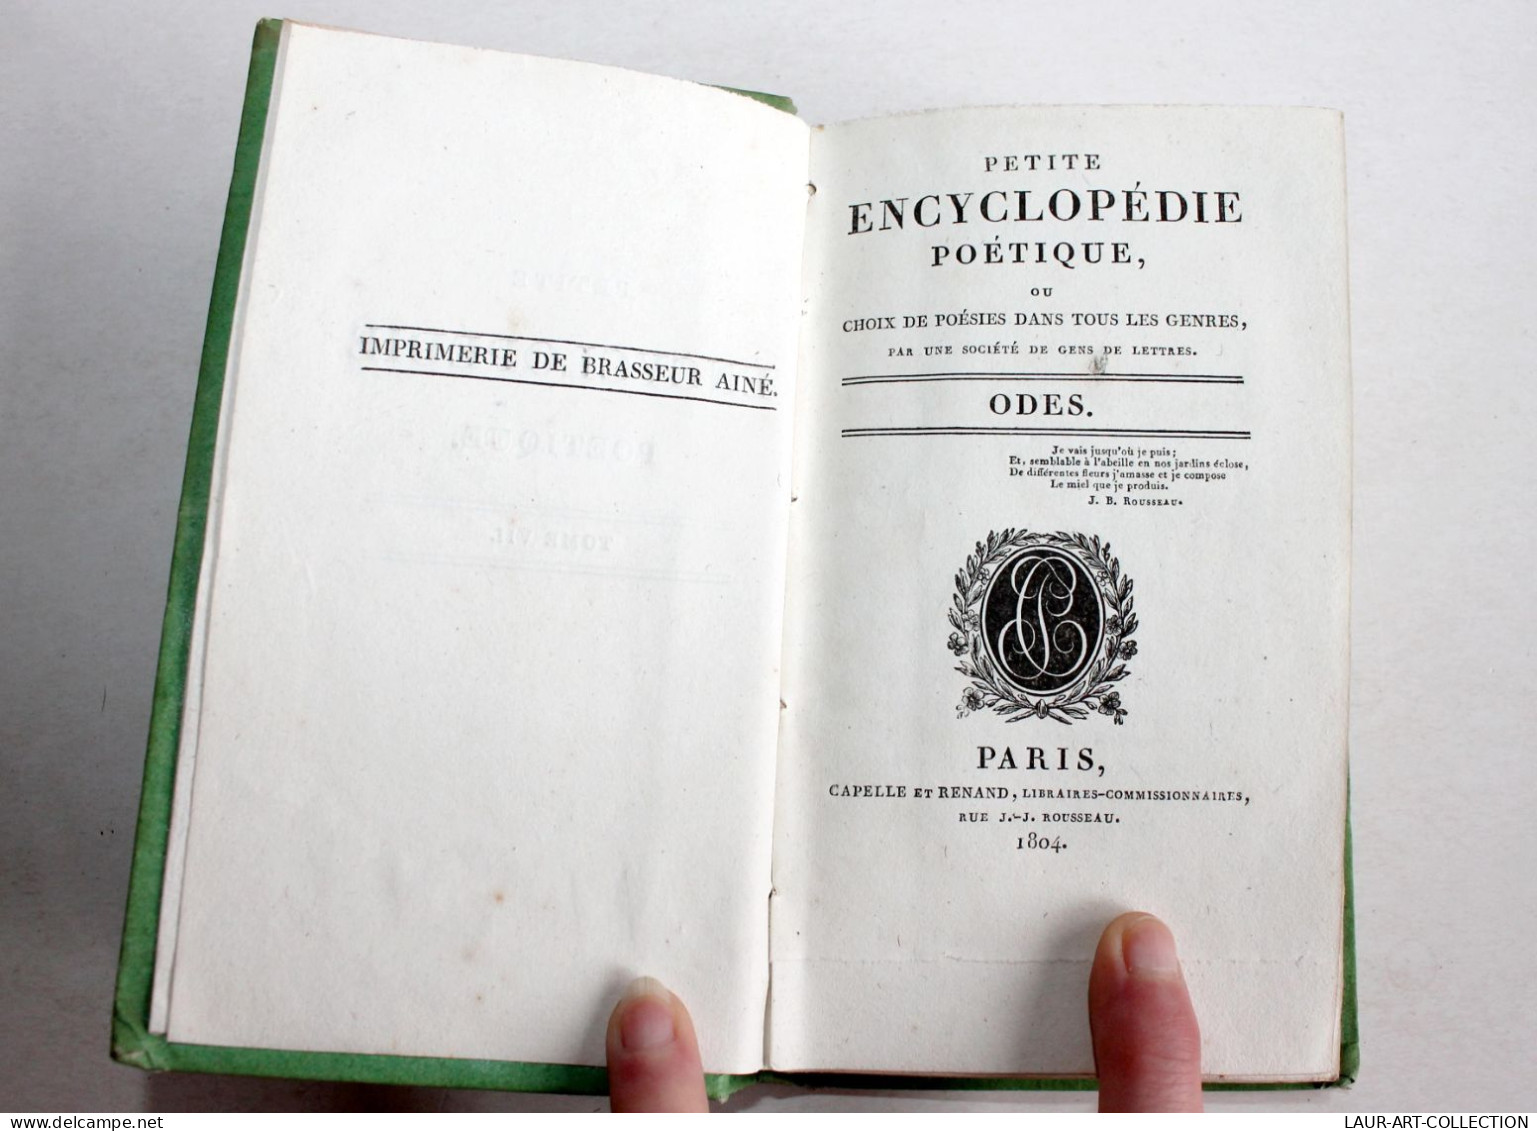 PETITE ENCYCLOPEDIE POETIQUE CHOIX POESIES TOUS GENRES CONTENANT 50 ODES 1804 T7 / ANCIEN LIVRE XIXe SIECLE (1803.184) - Französische Autoren